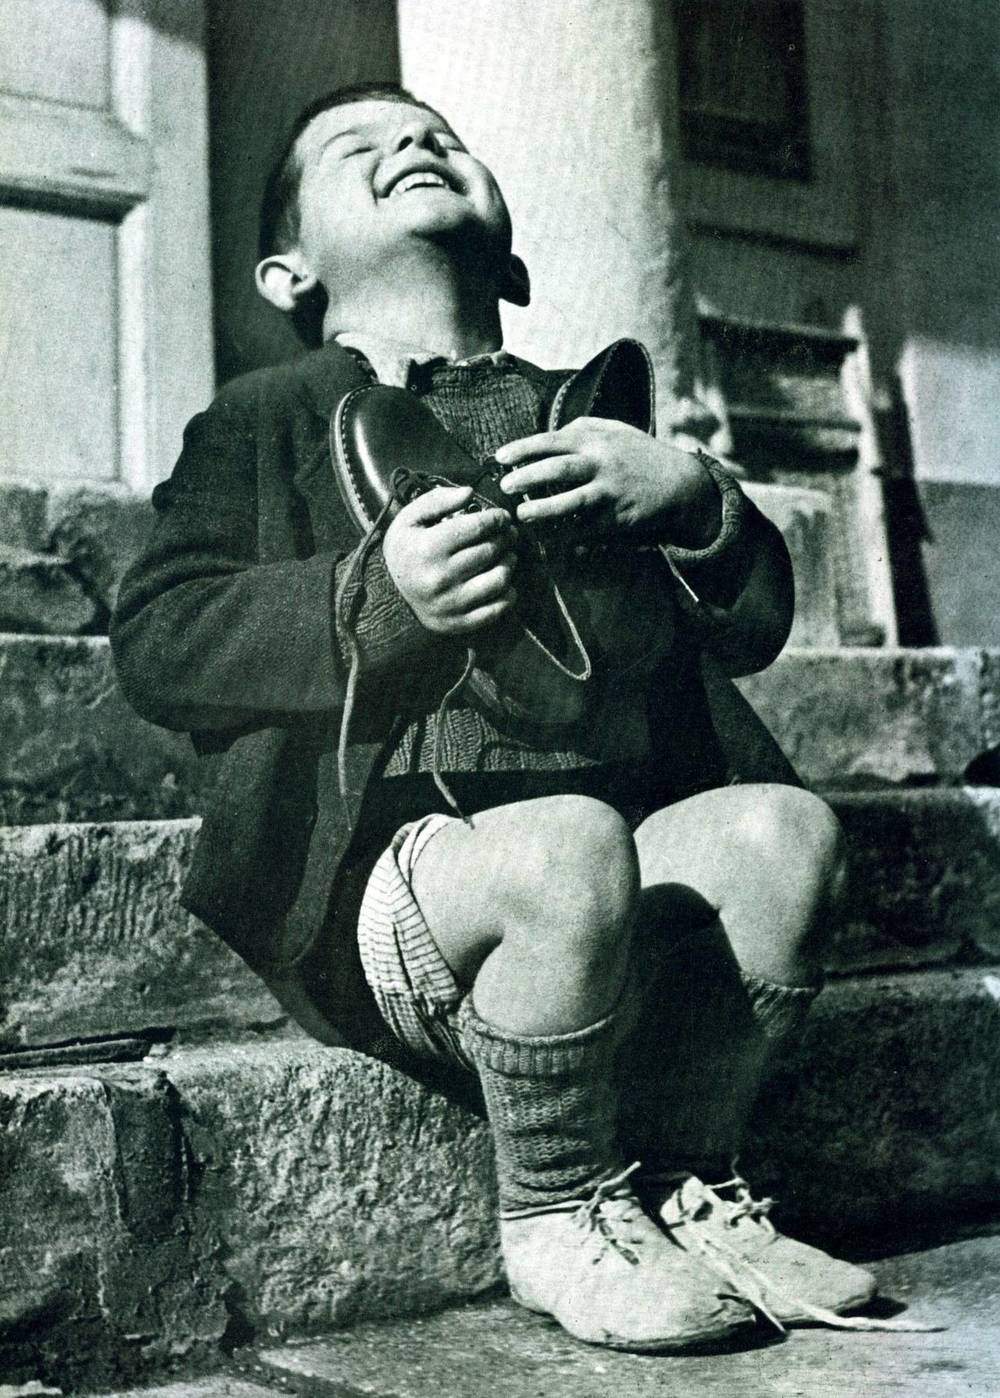 14. Reactia unui baietel care primea o pereche noua de pantofi, in timpul celui de-al Doilea Razboi Mondial